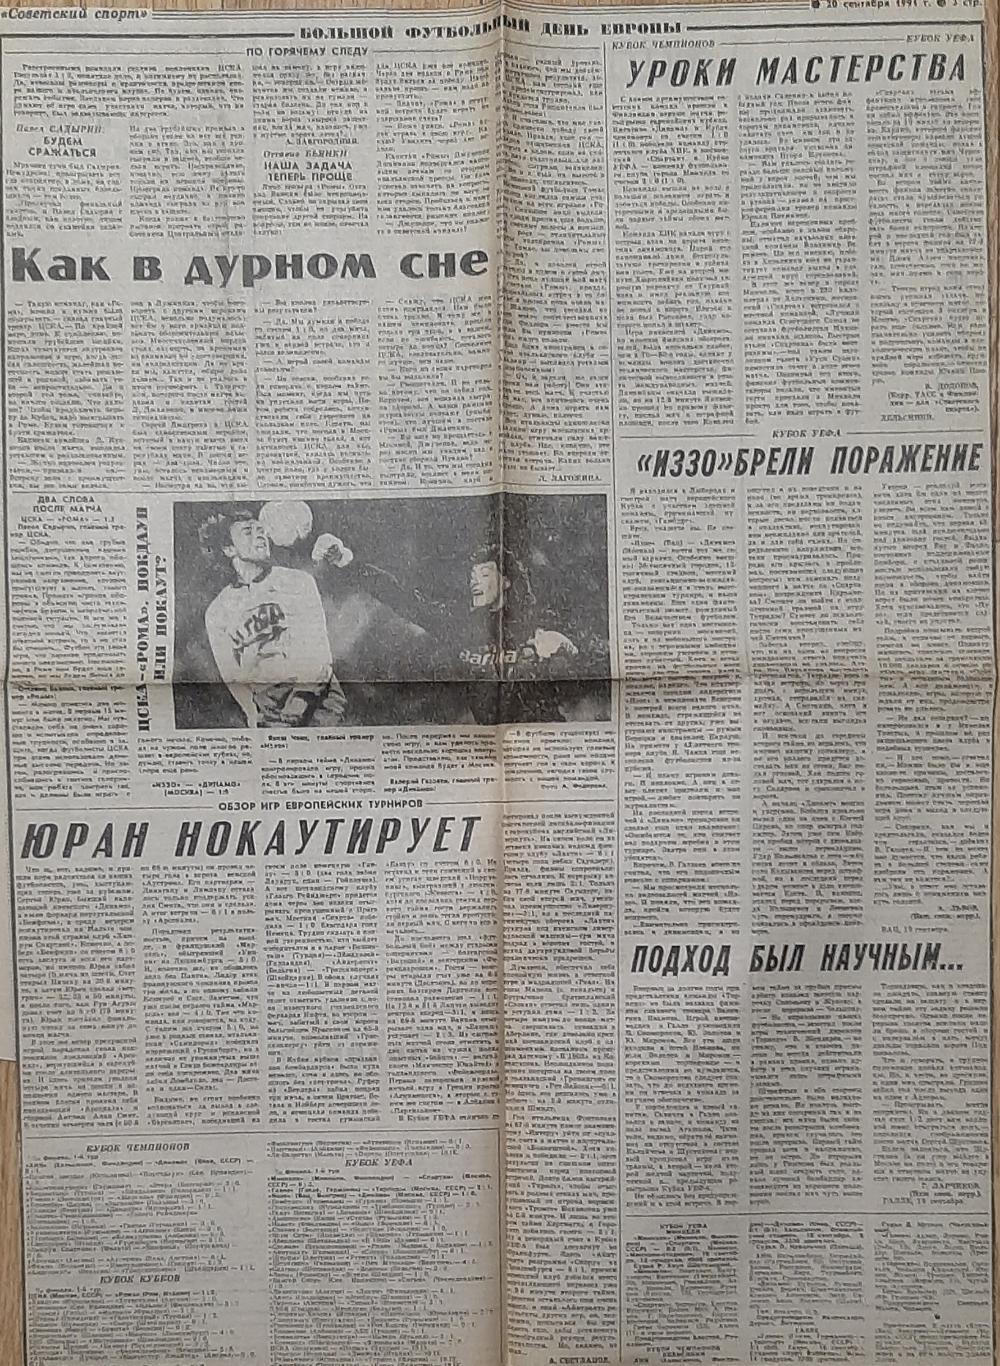 Вирізка х газети Советский спорт (20.09.1991) Еврокубки